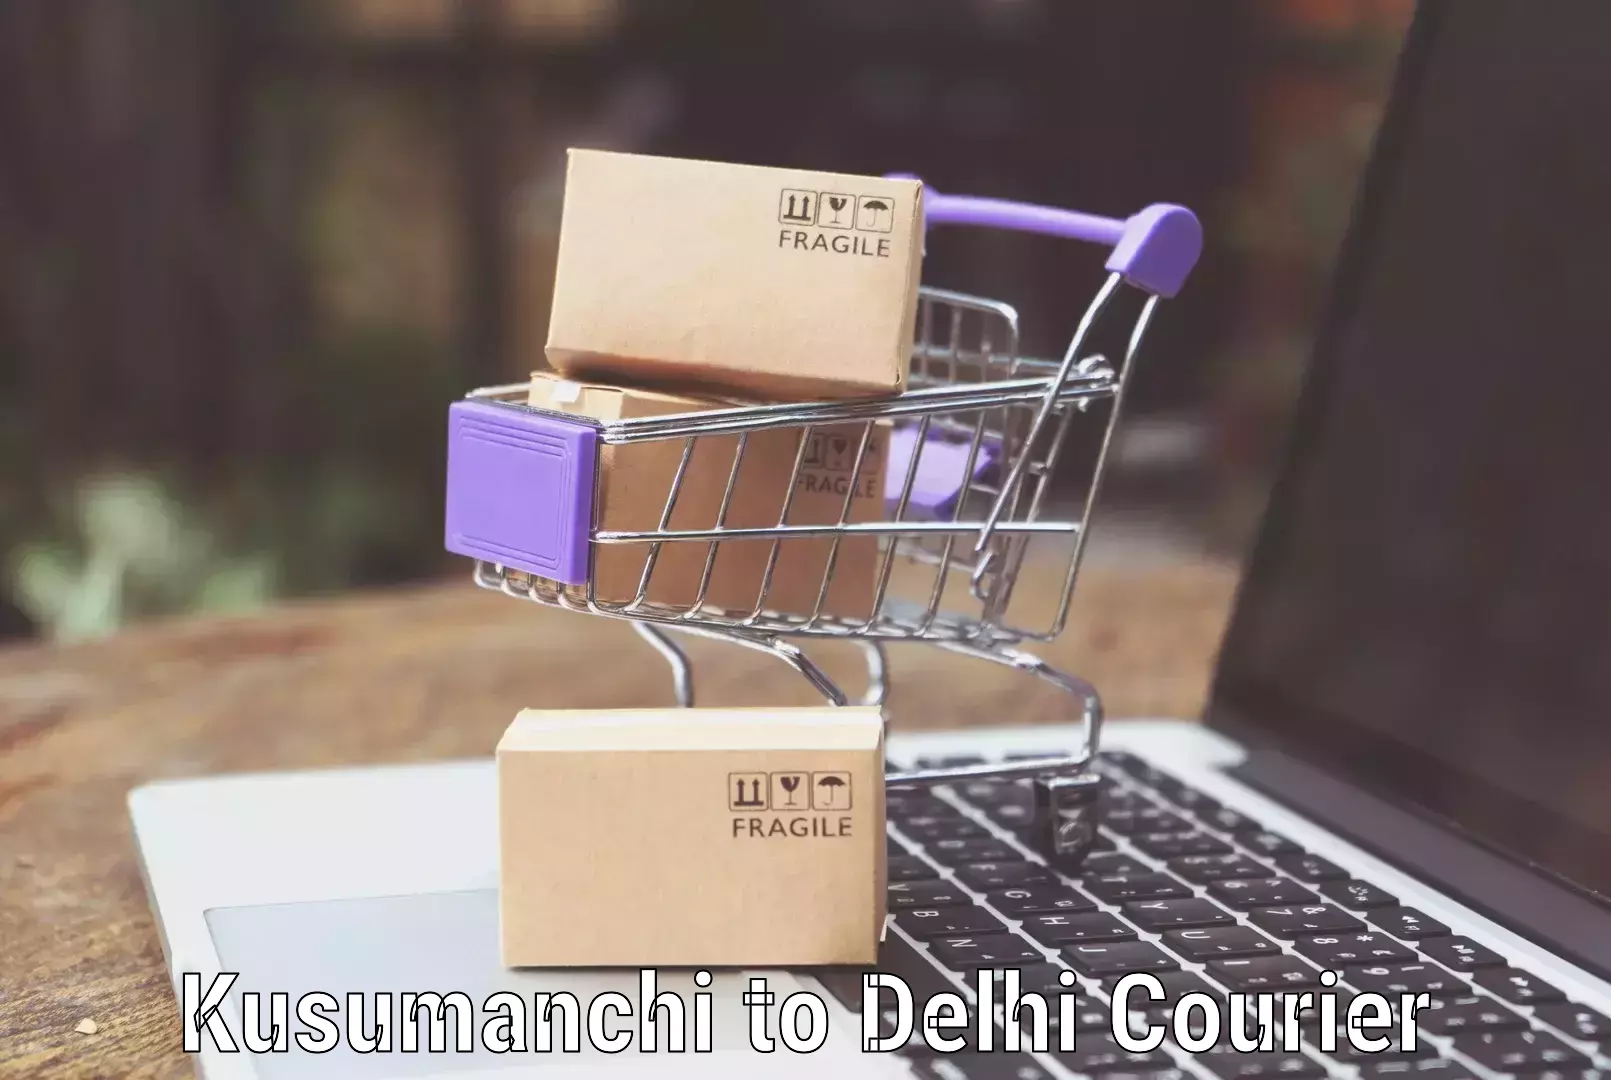 Luggage delivery optimization Kusumanchi to University of Delhi